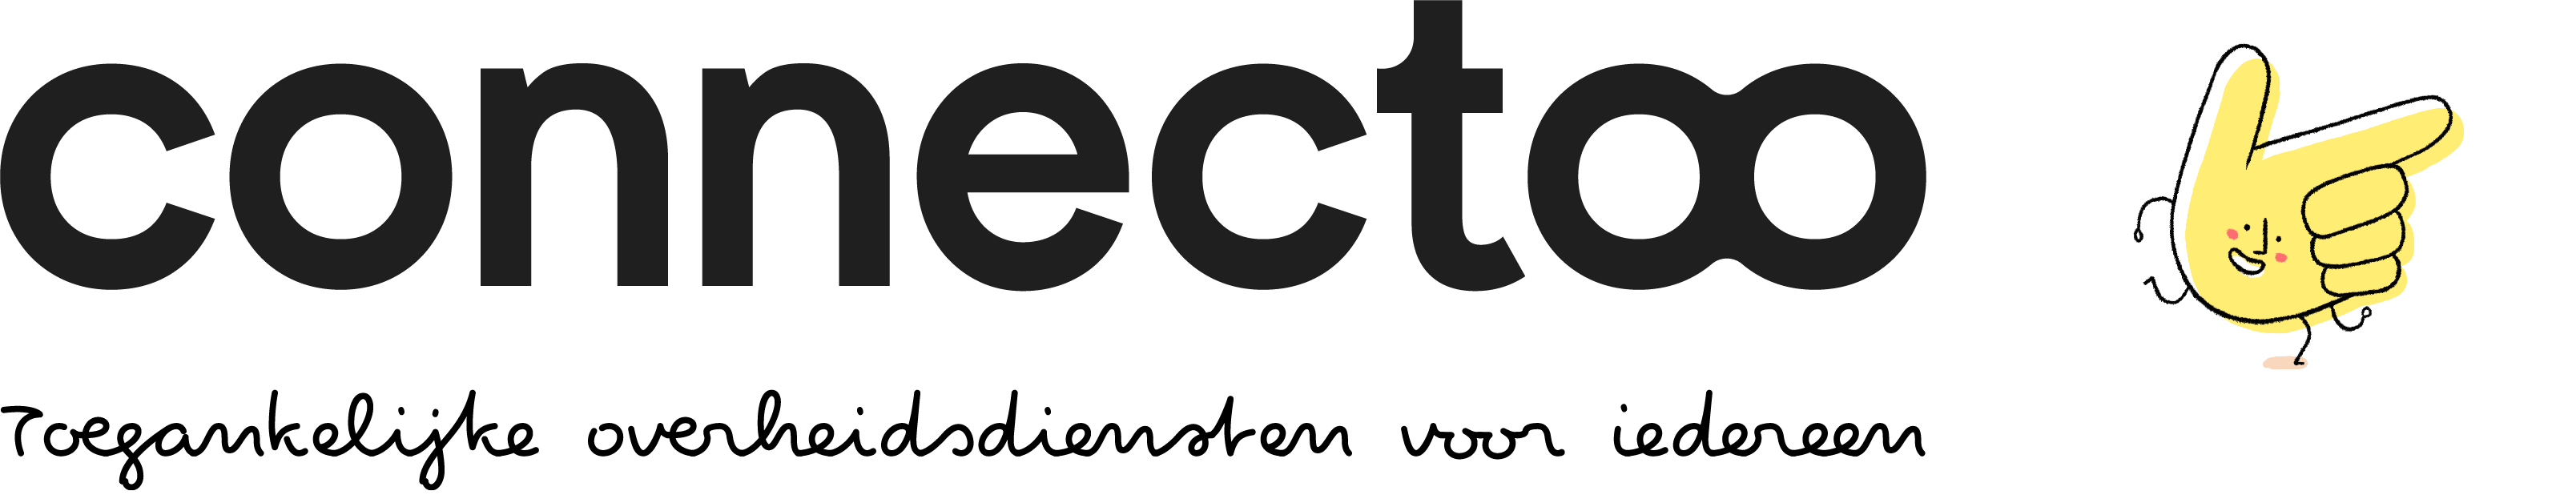 Logo connectoo